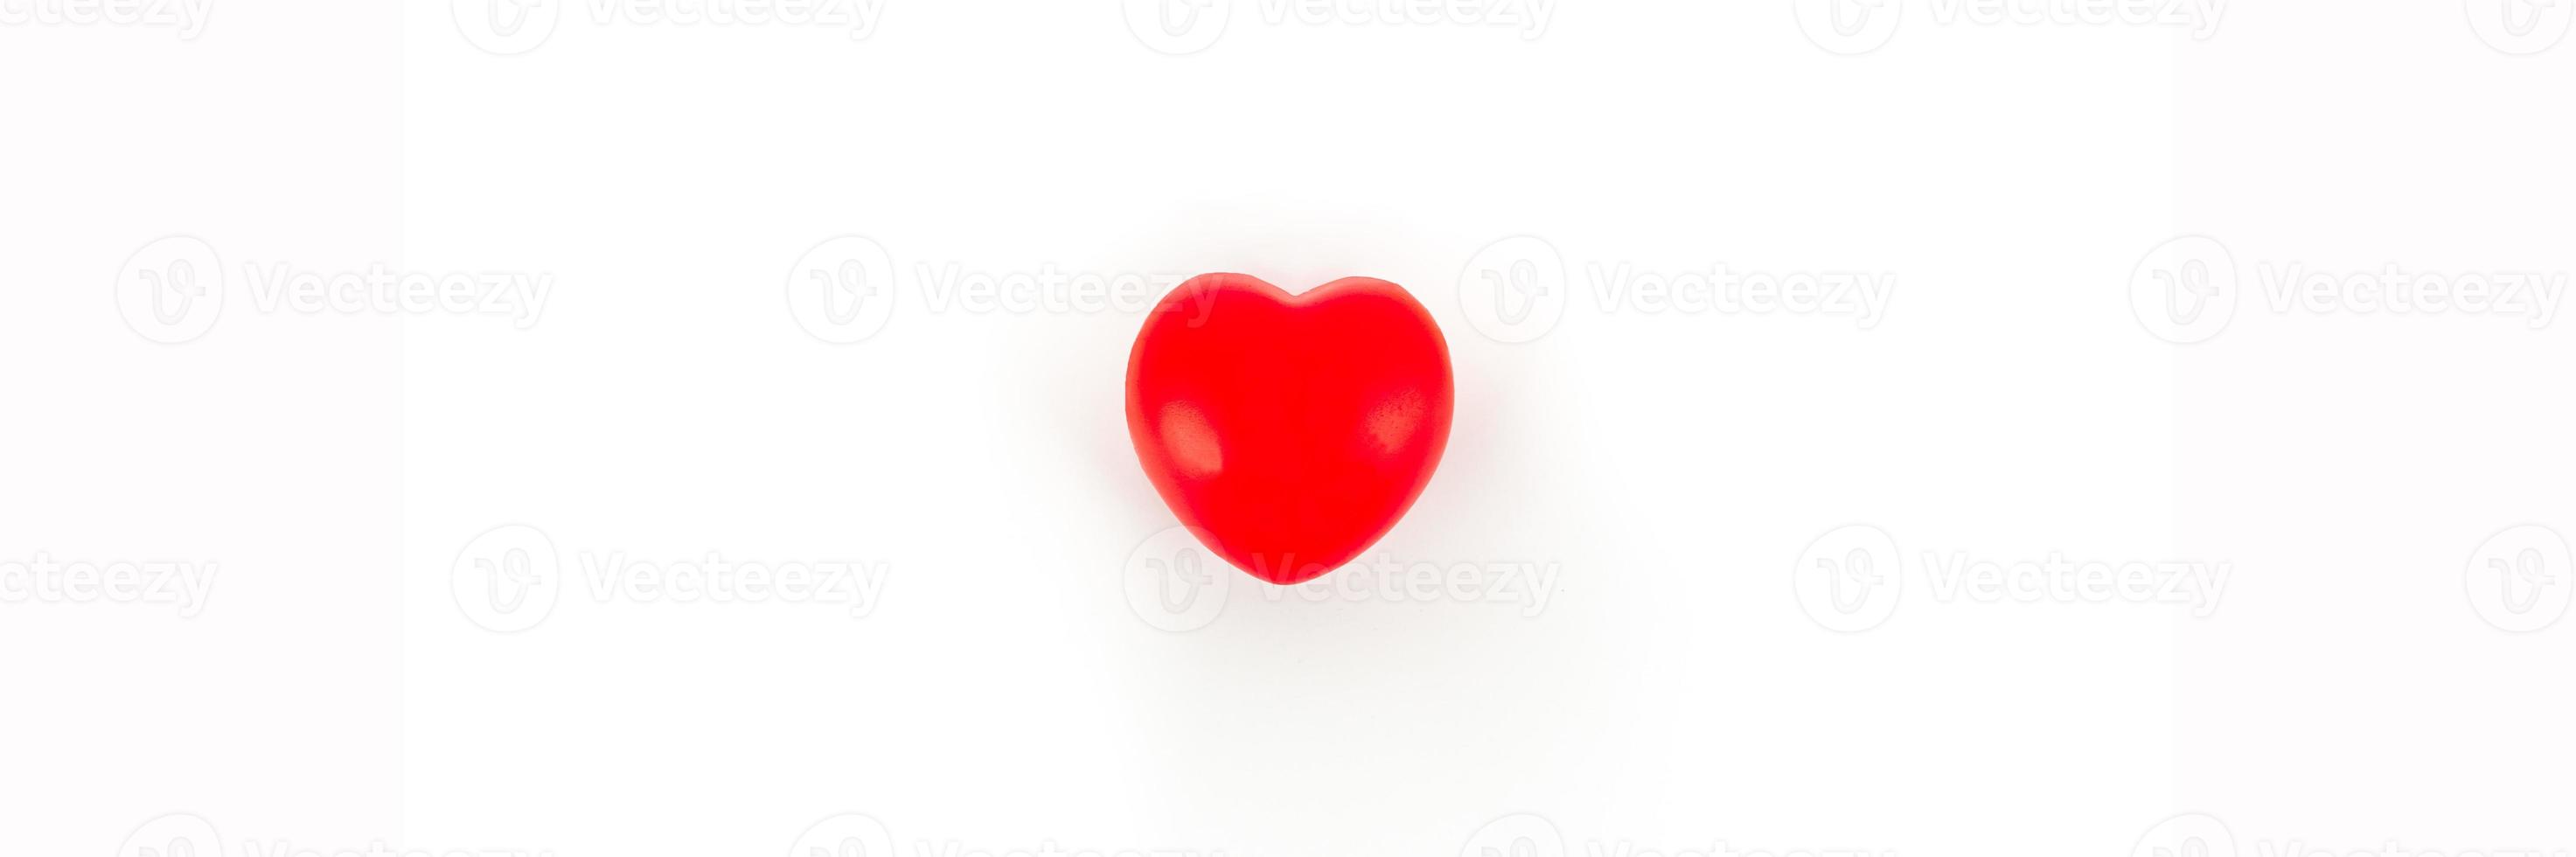 het rode hart staat voor de liefde op een witte achtergrond. foto